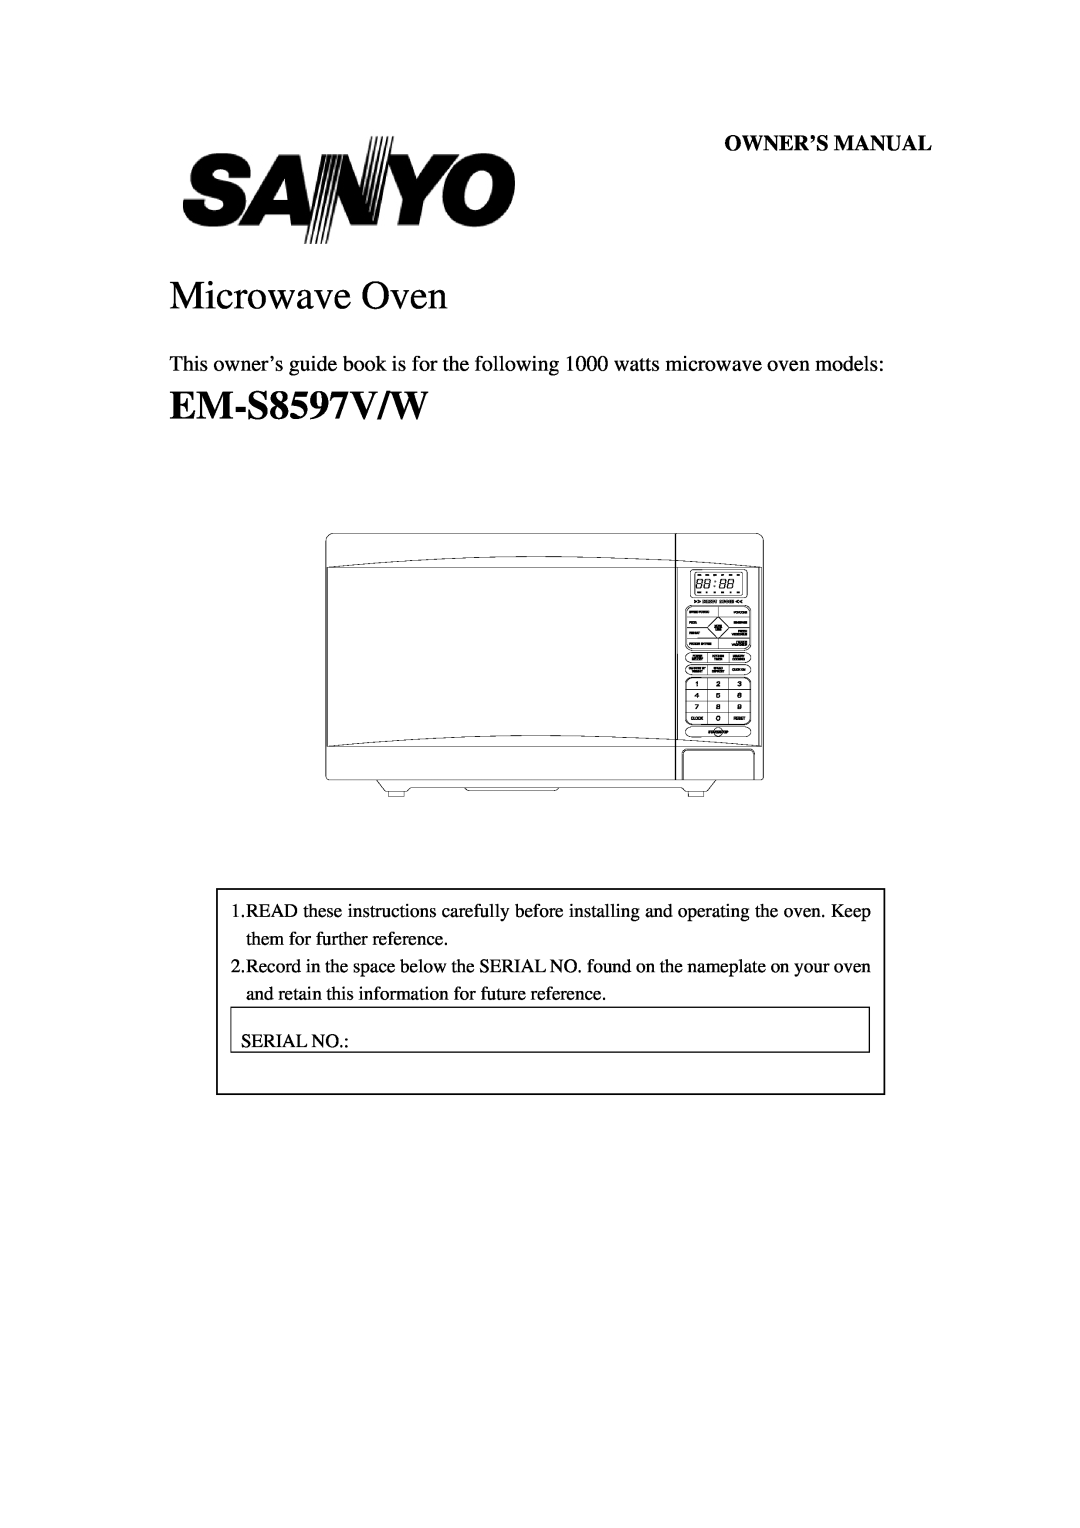 Sanyo EM-S8597W owner manual Microwave Oven, EM-S8597V/W 